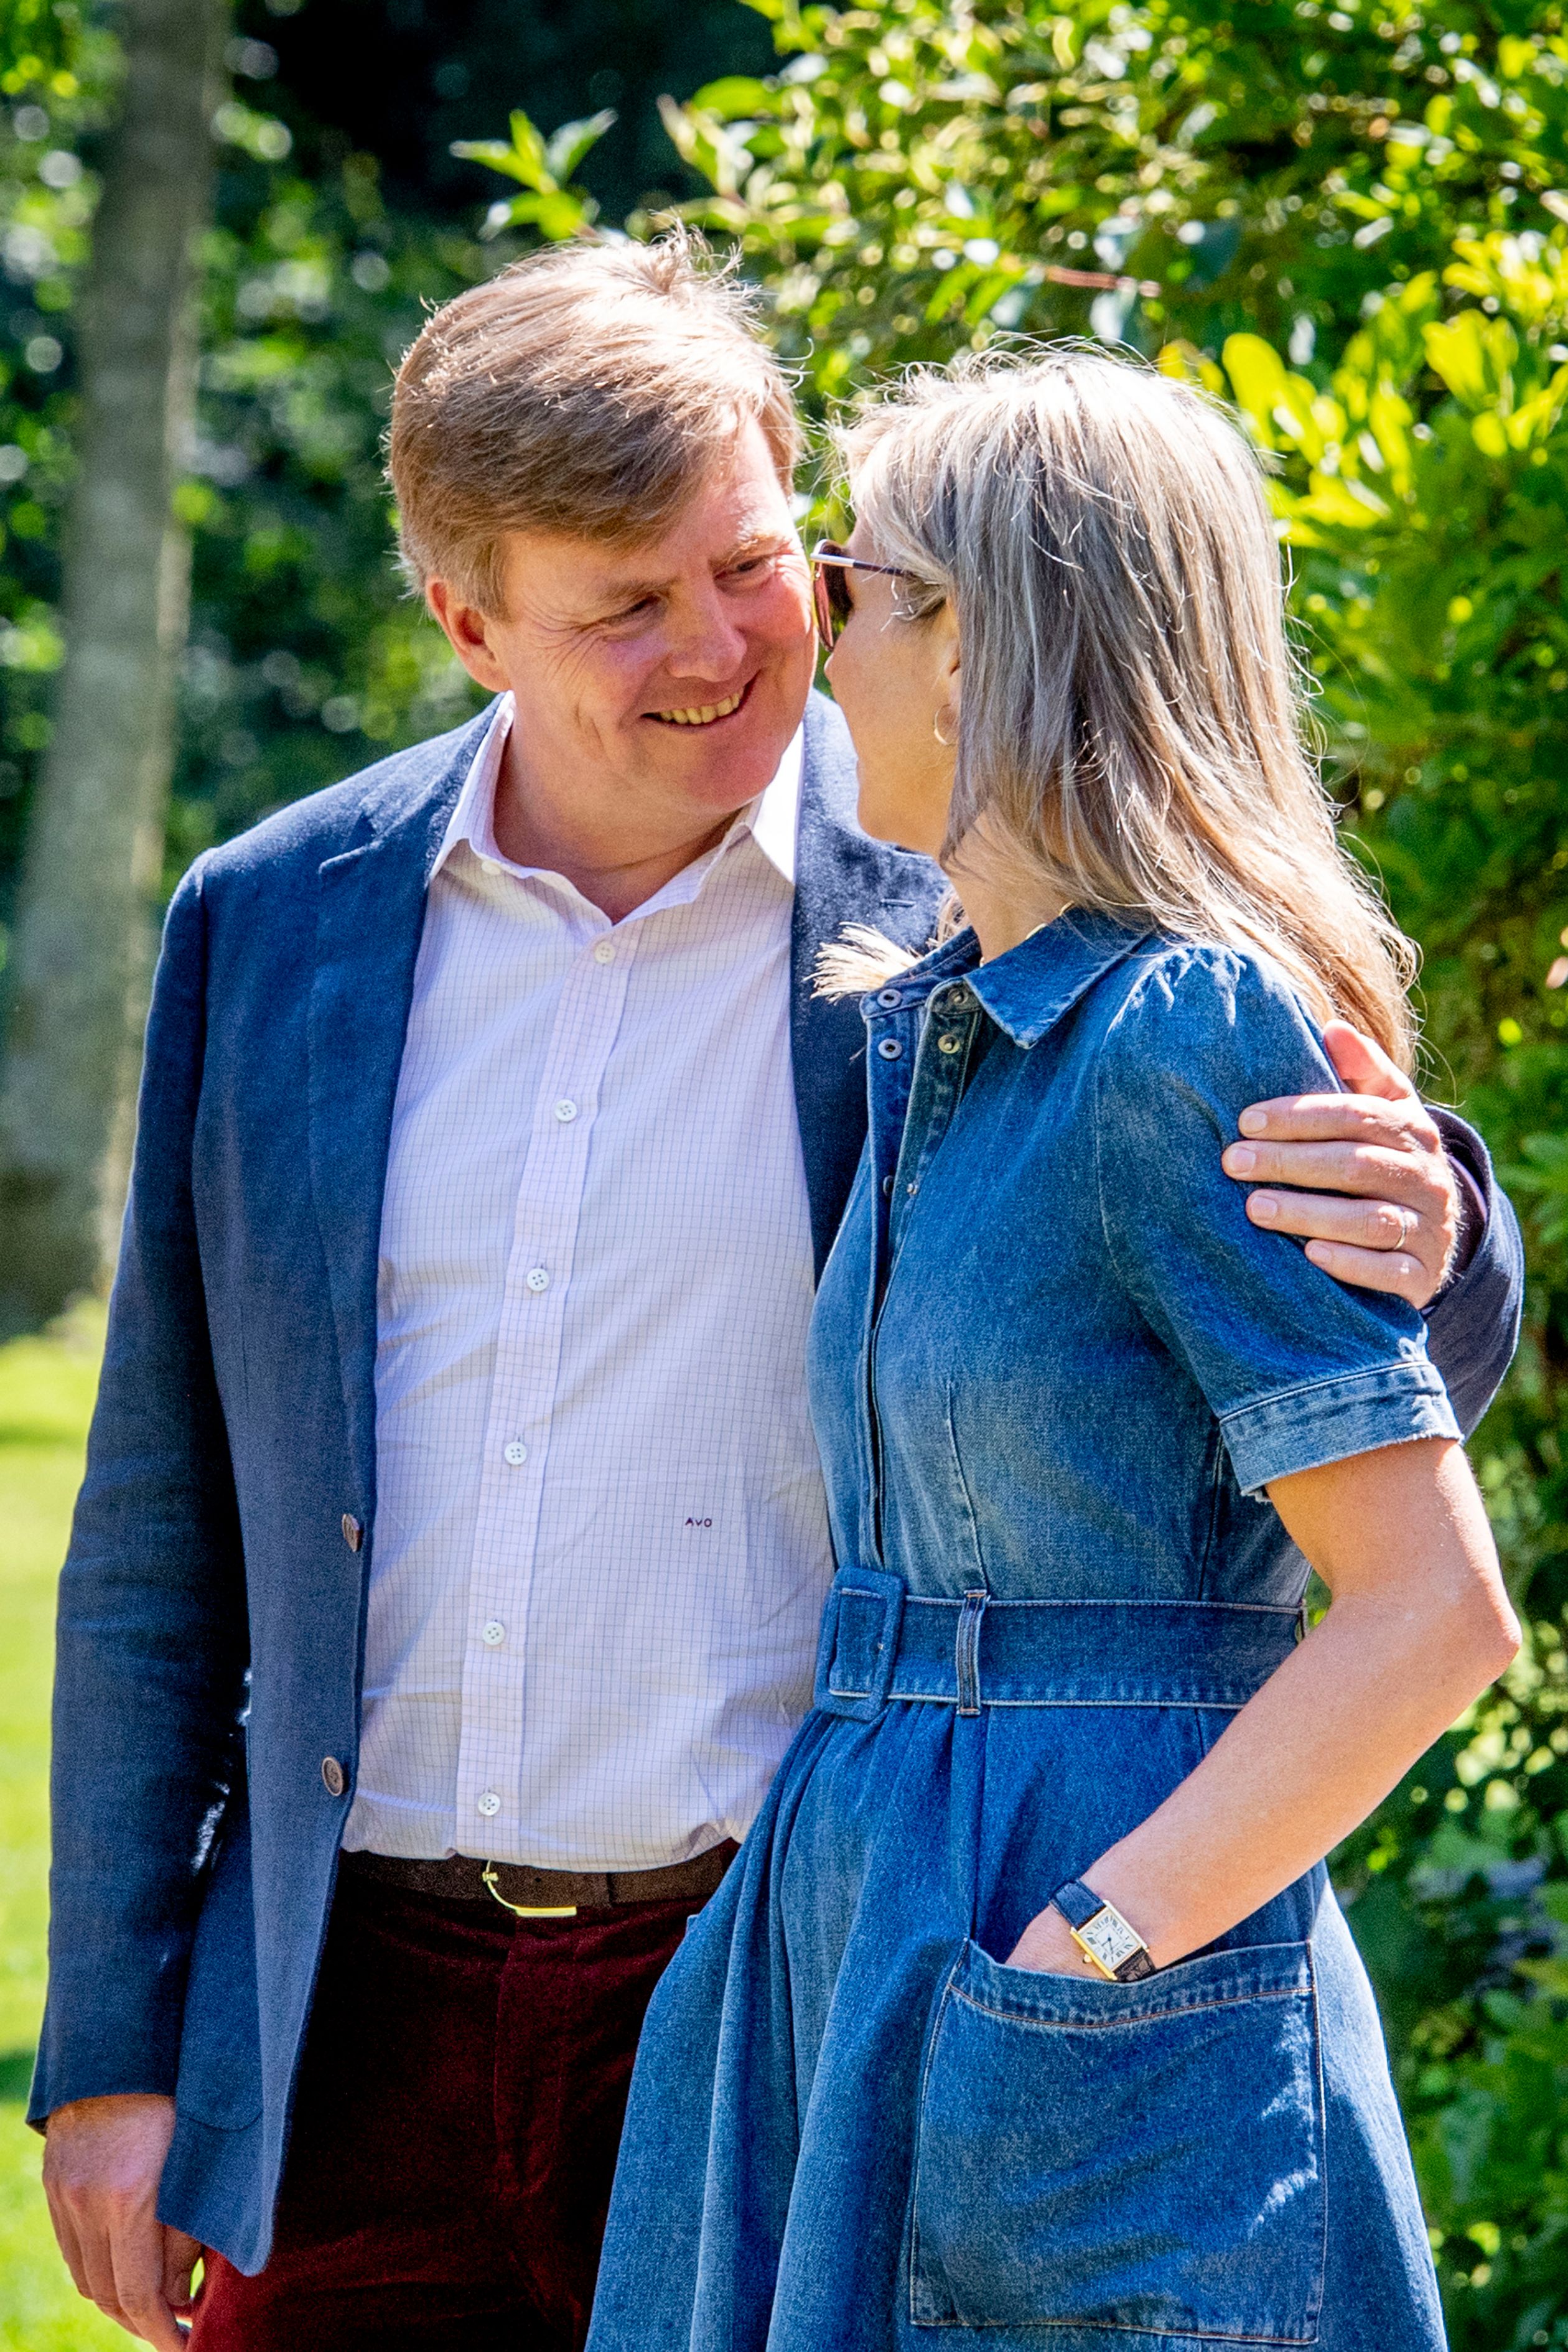 Koning Willem-Alexander en koningin Máxima tijdens de jaarlijkse koninklijke fotosessie in de tuin